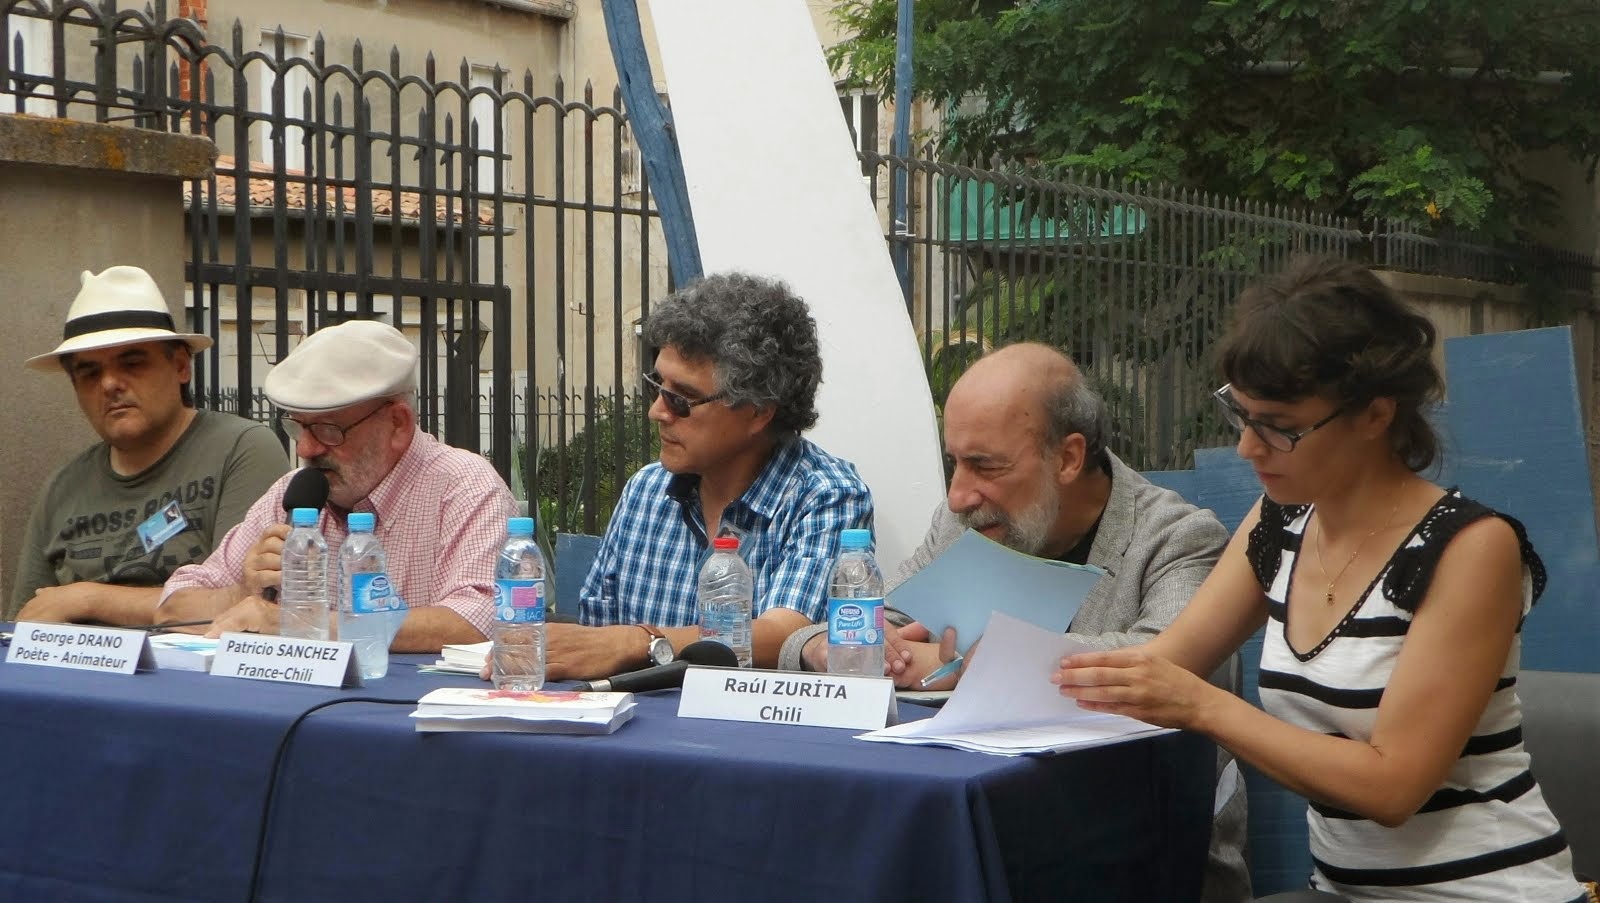 C. Corps, G. Drano, P.Sánchez, R.Zurita, C.Dumoulin Festival Voix Vives Sète France - Juillet 2014